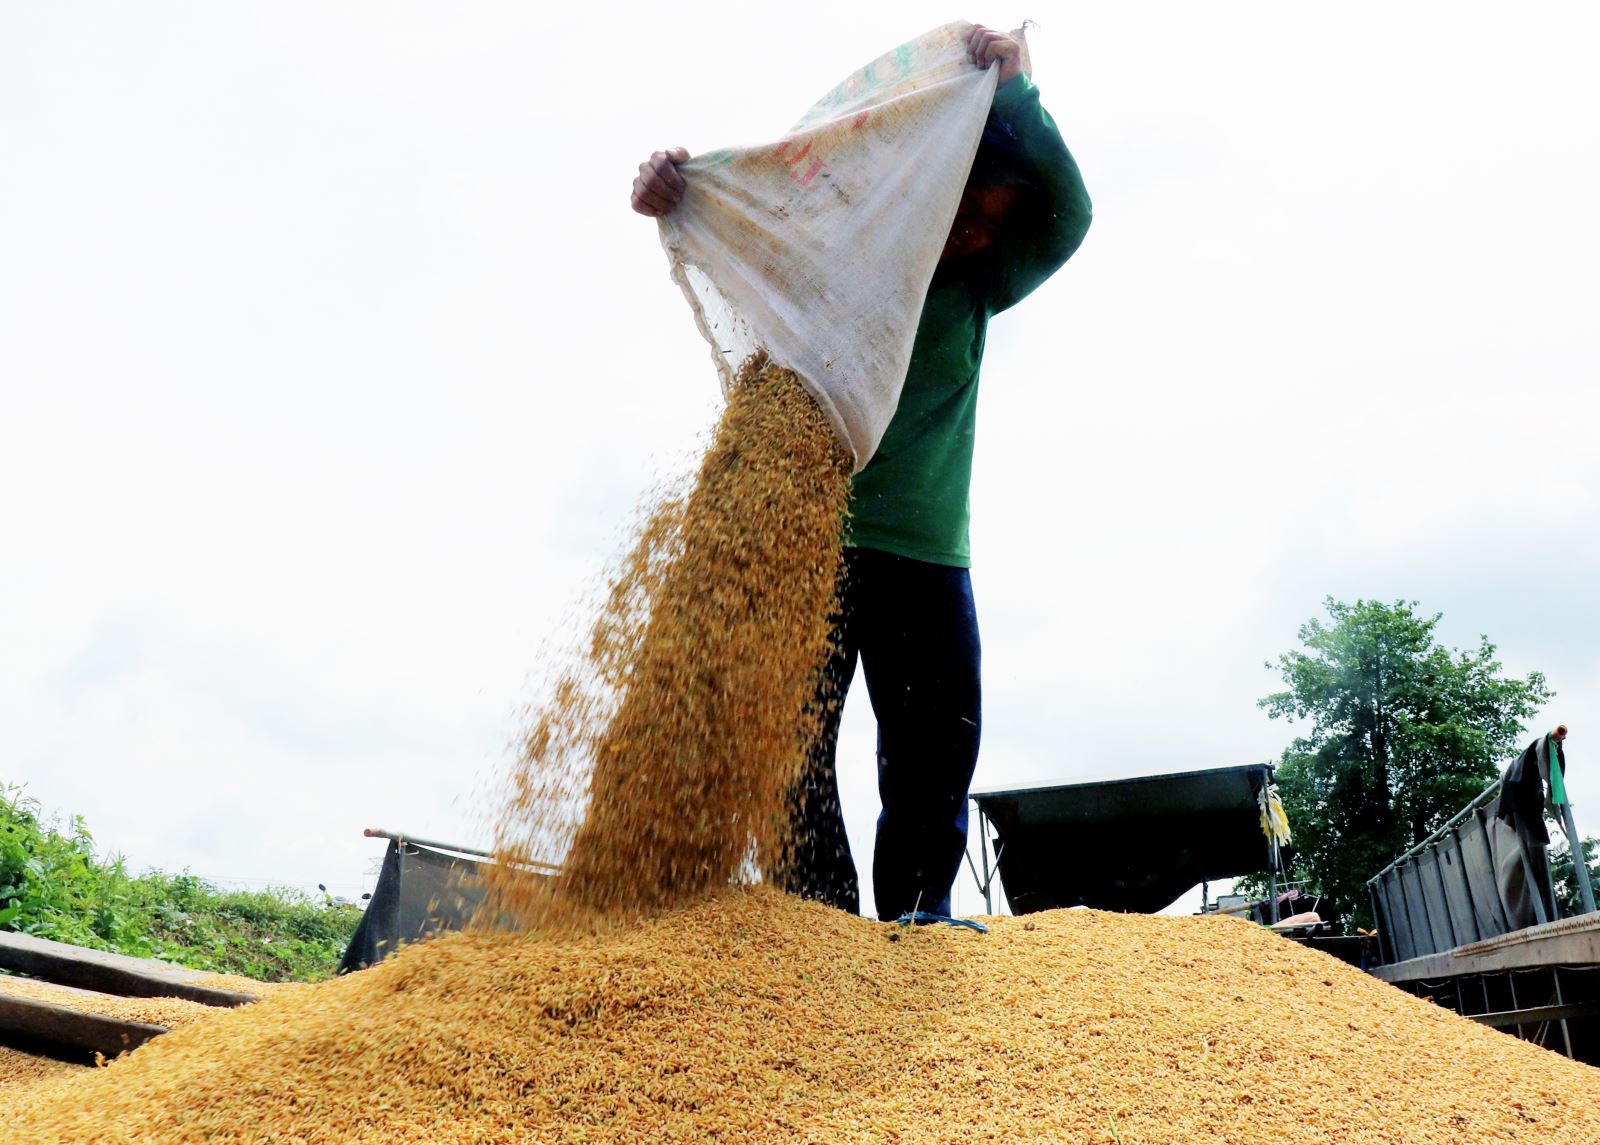 Giá gạo xuất khẩu giảm, kéo giá lúa trong nước đi xuống - Ảnh 1.